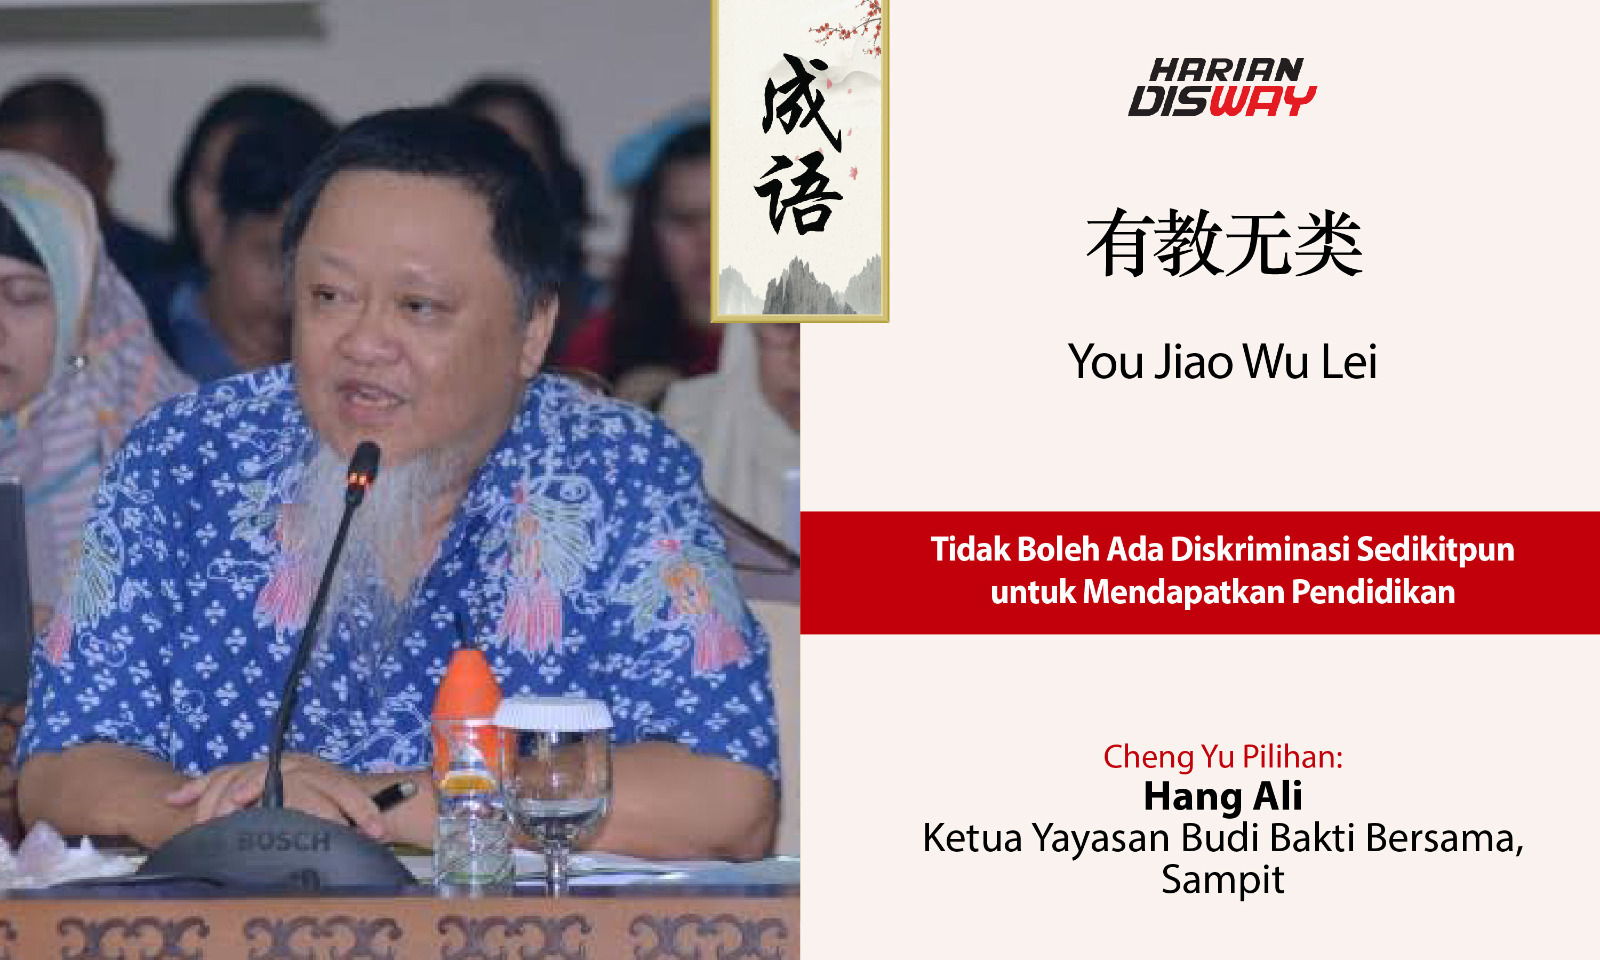 Cheng Yu Pilihan Ketua Yayasan Budi Bakti Bersama, Sampit Hang Ali: You Jiao Wu Lei